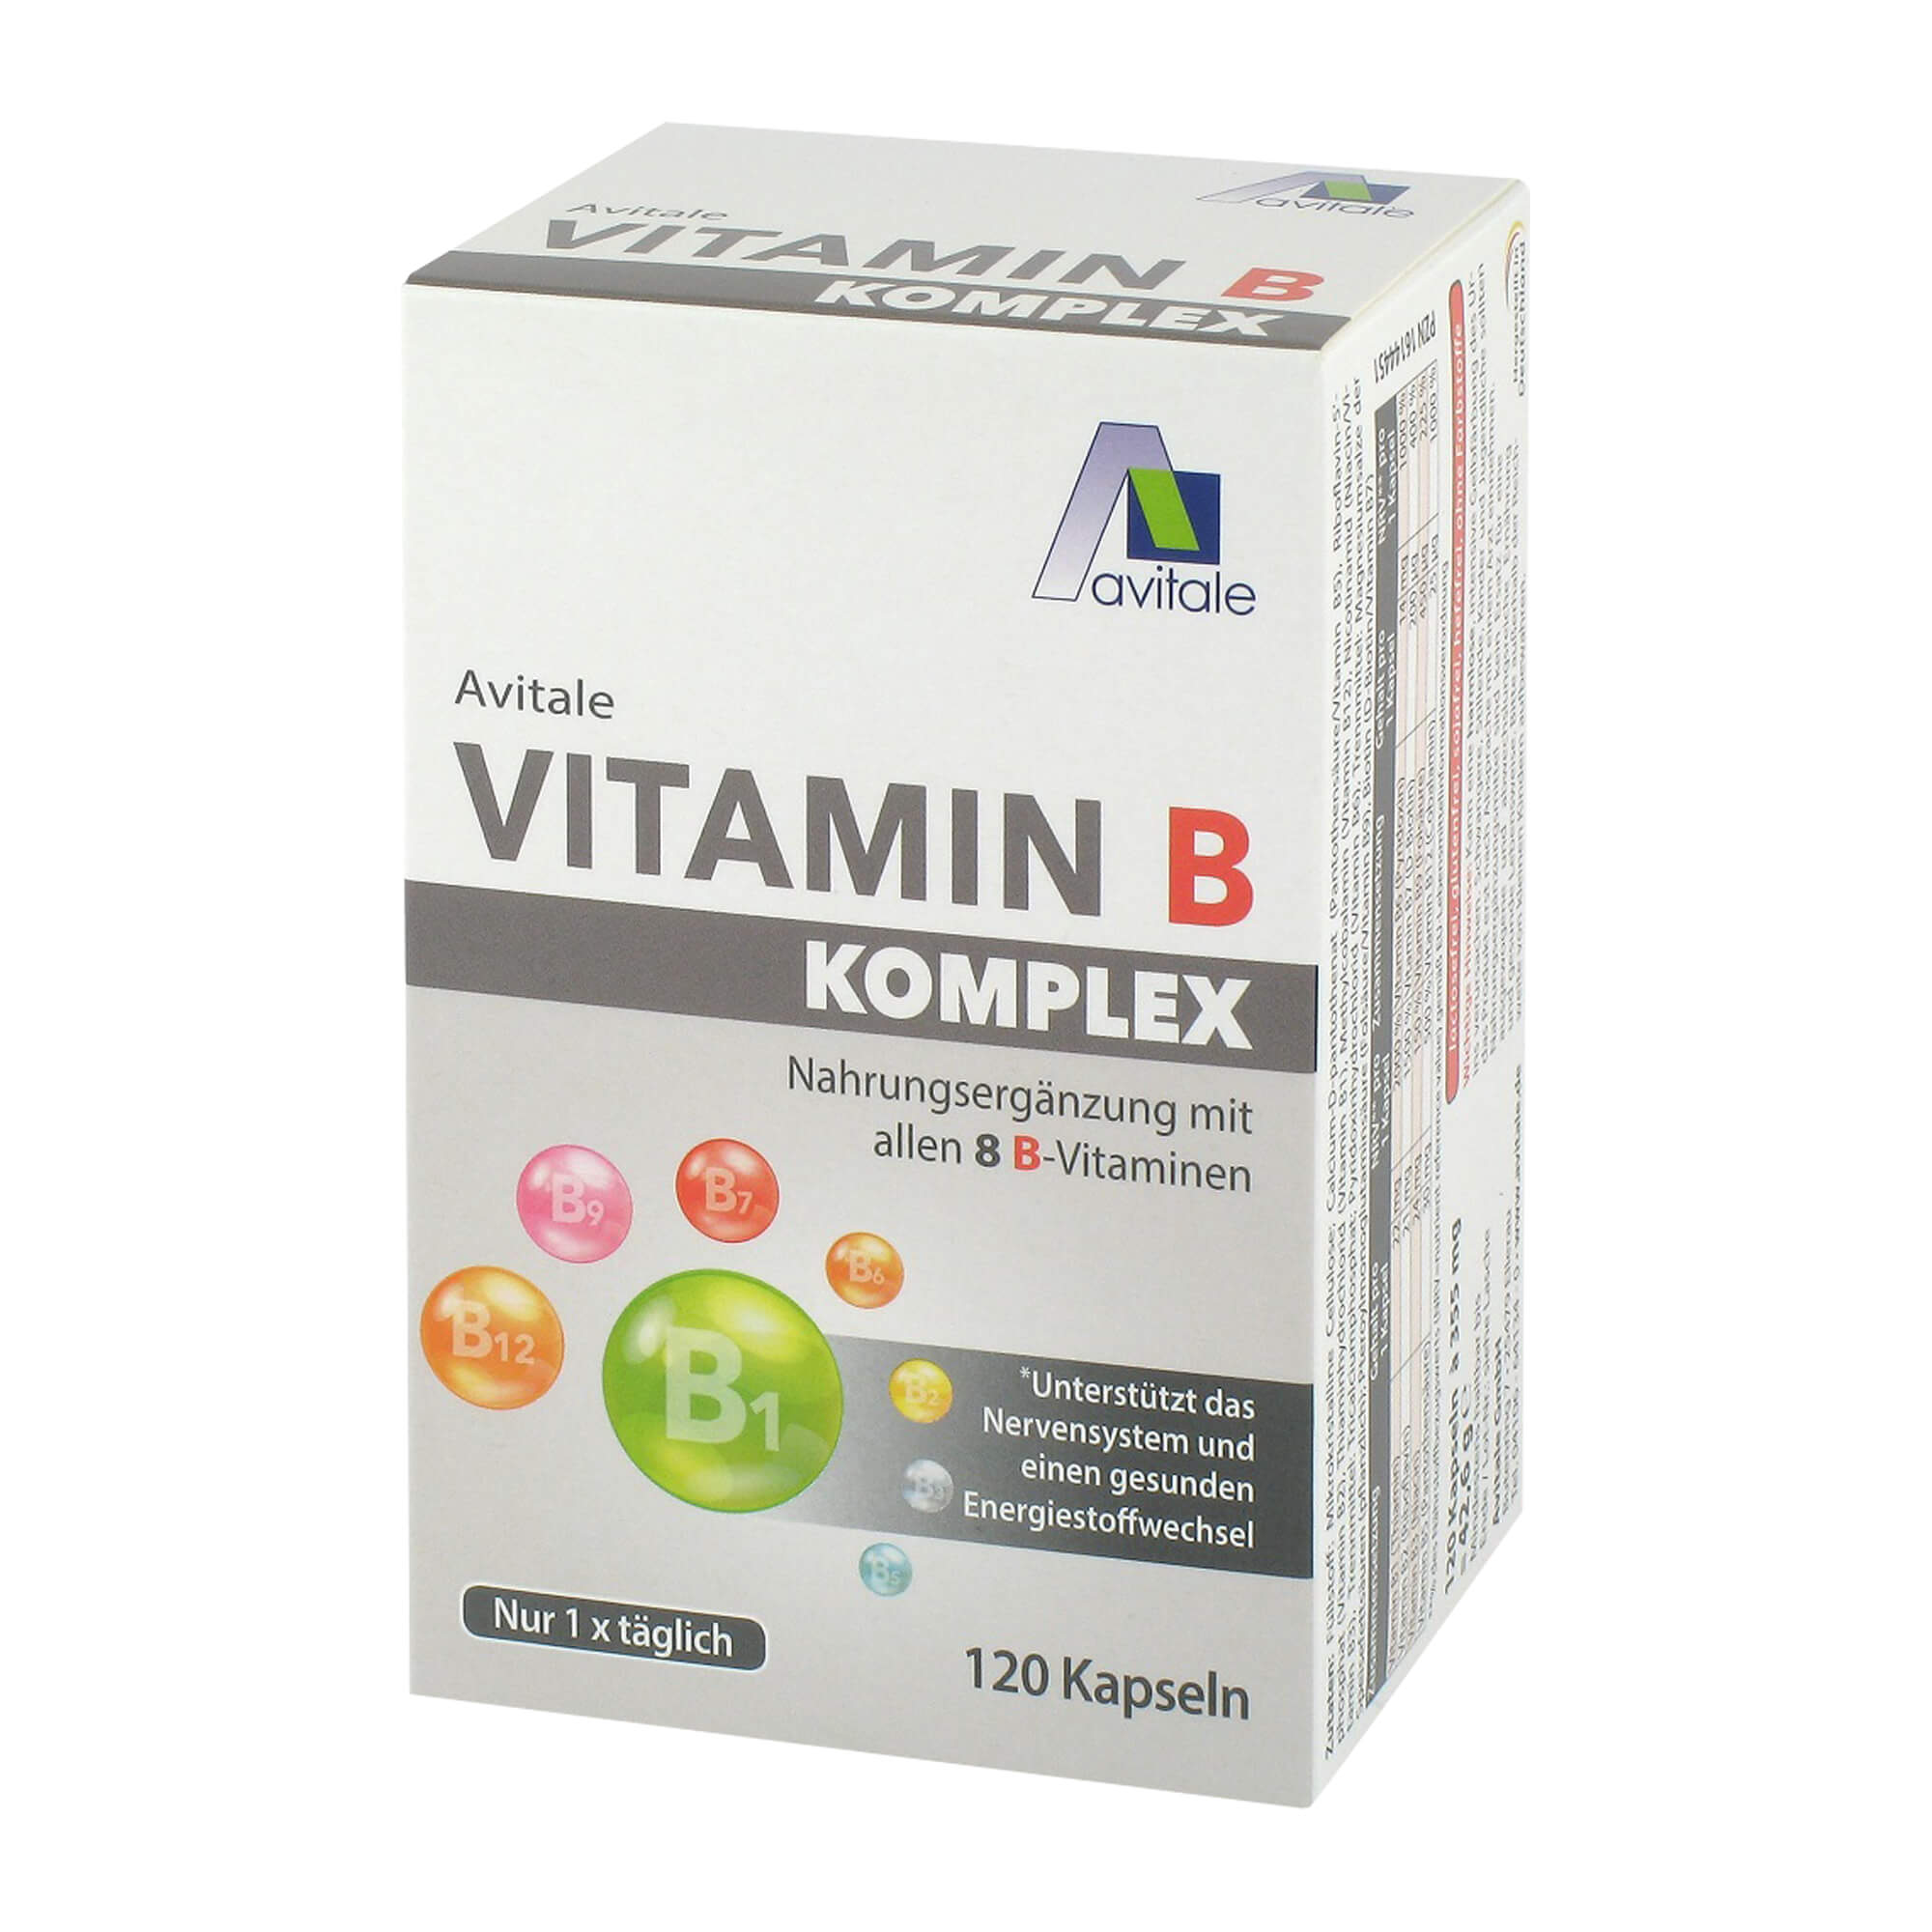 Nahrungsergänzungsmittel mit allen acht B-Vitaminen.